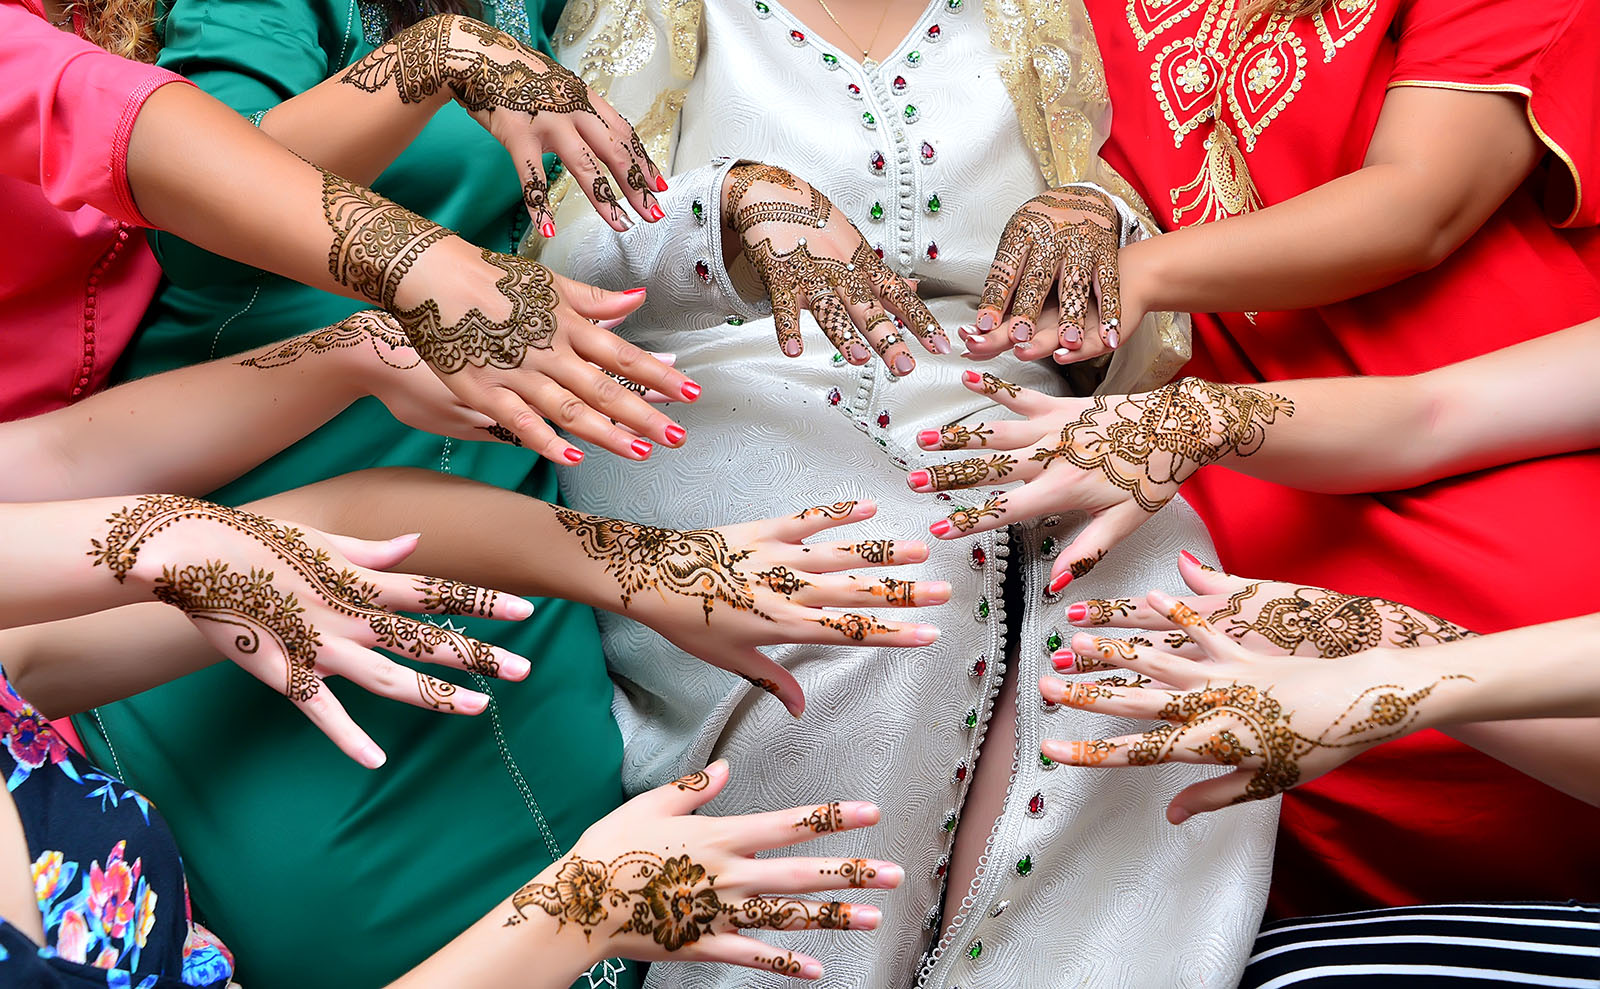 several women displaying henna tattoos